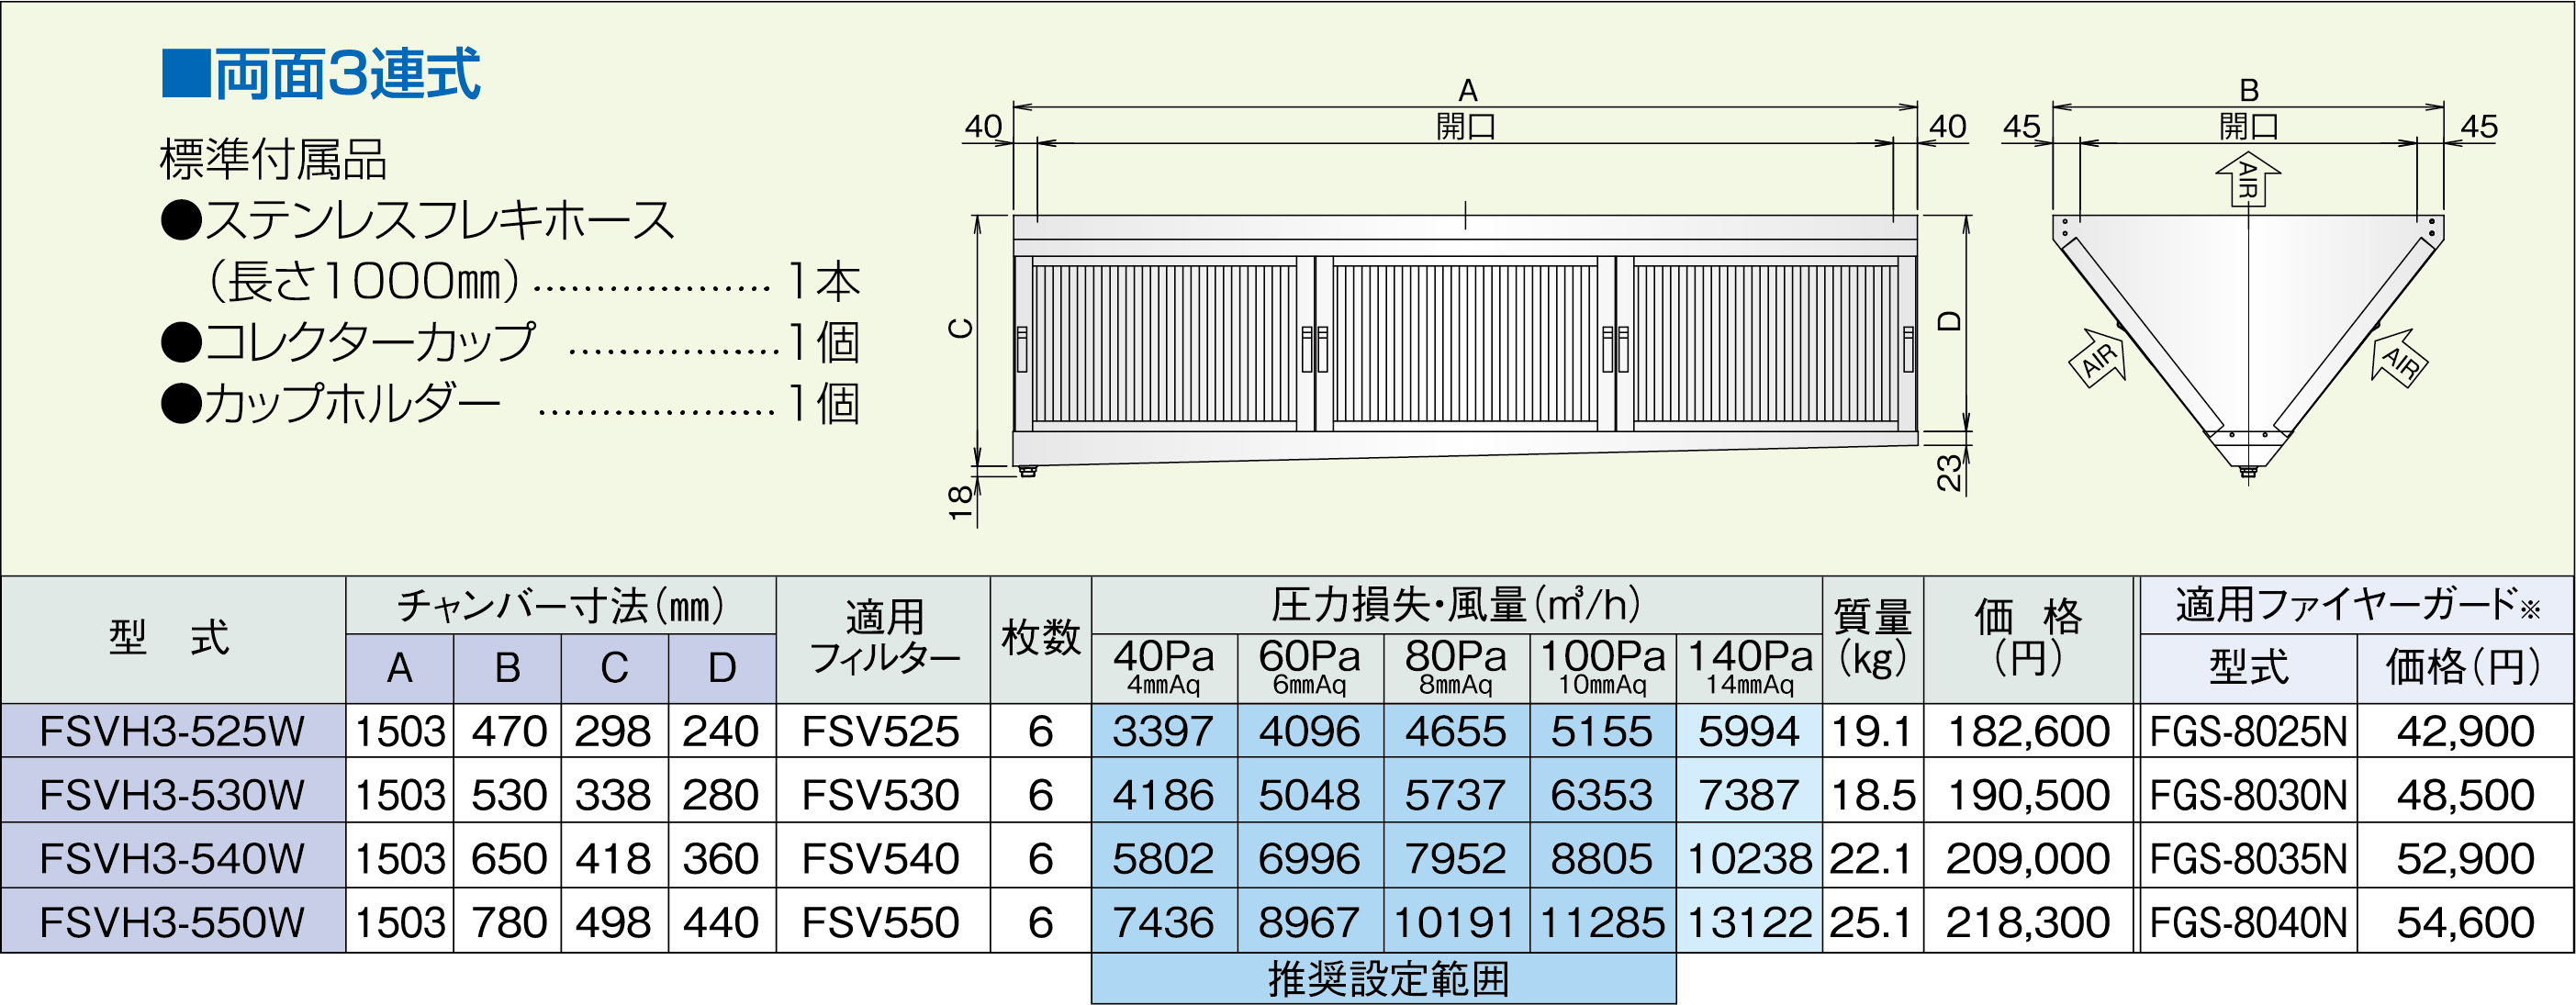 世界的に有名な インテリアショップ 卓越商事ホーコス グリースフィルター FSVH3-525S 高風量Vフィルター FSVHタイプ 片面3連式 